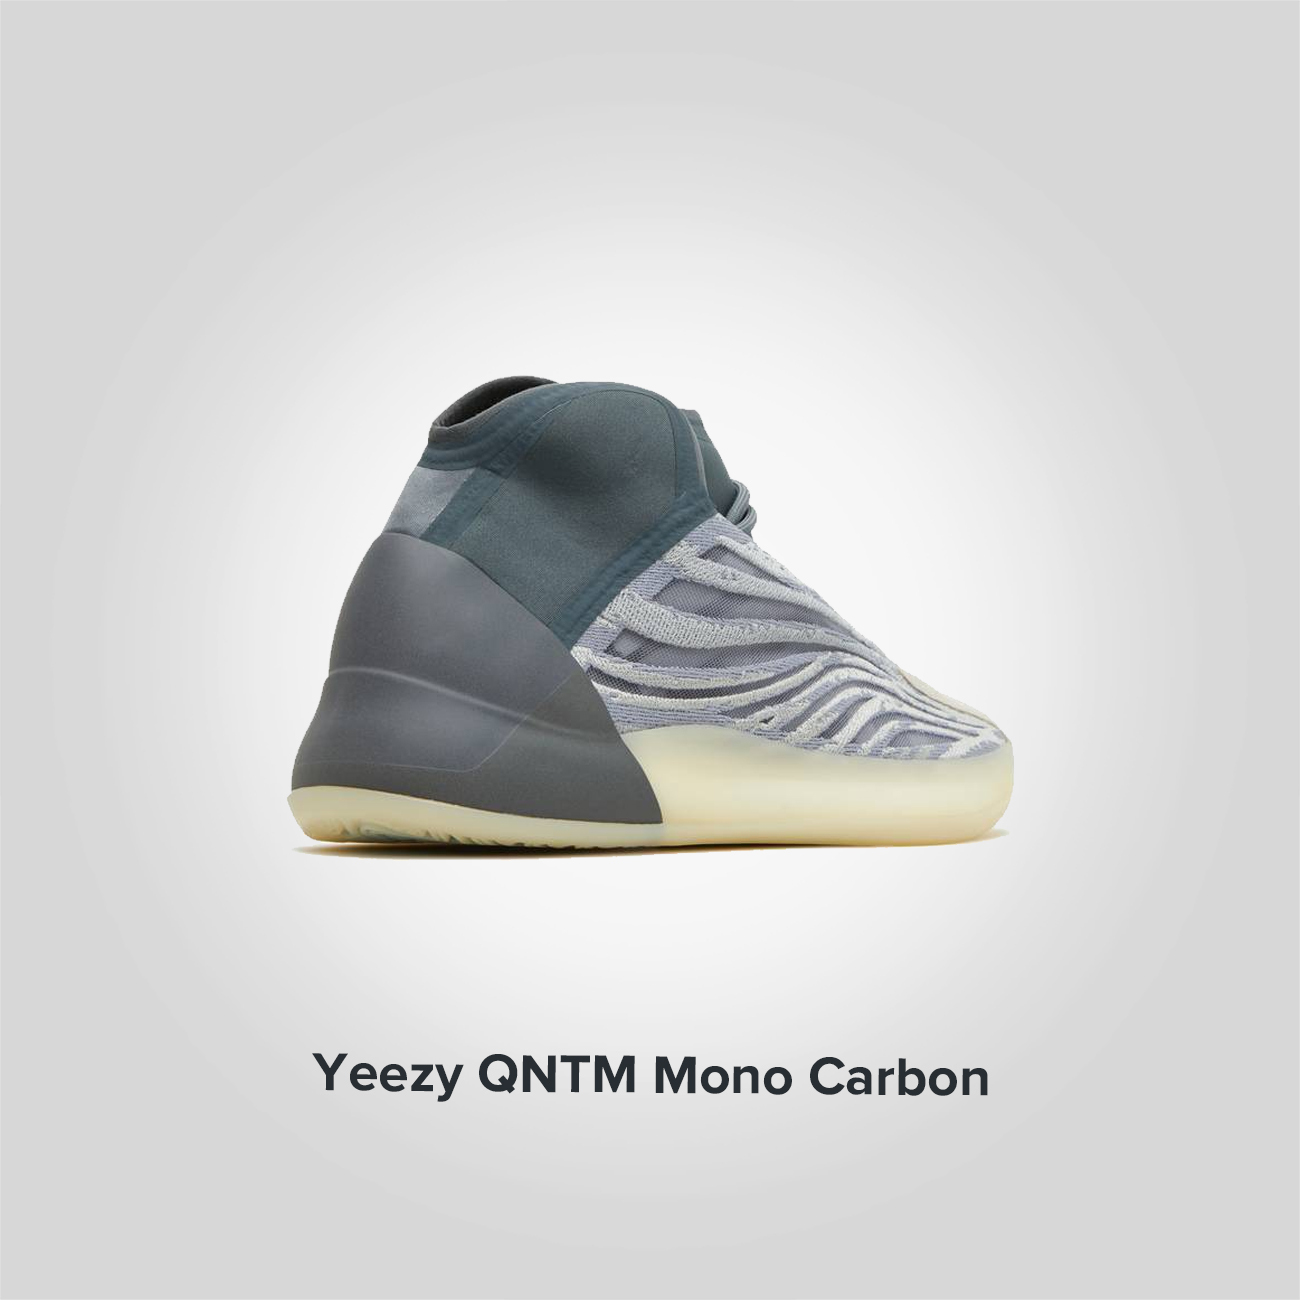 Yeezy QNTM Mono Carbon